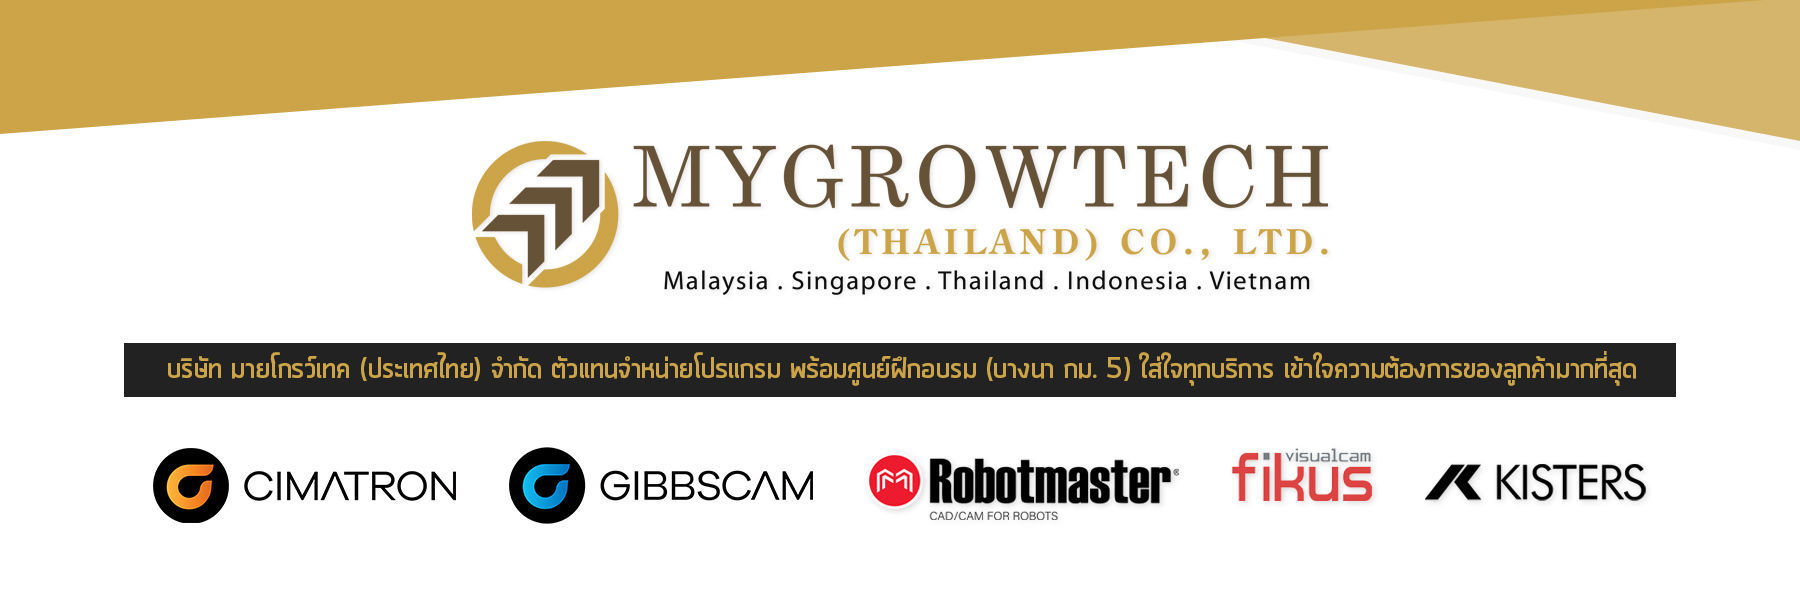 mygrowtechthailand ตัวแทนจำหน่ายโปรแกรม ซอร์ฟแวร์อุตสาหกรรม Cimatron 15, GibbsCAM, Robotmaster, Fiku